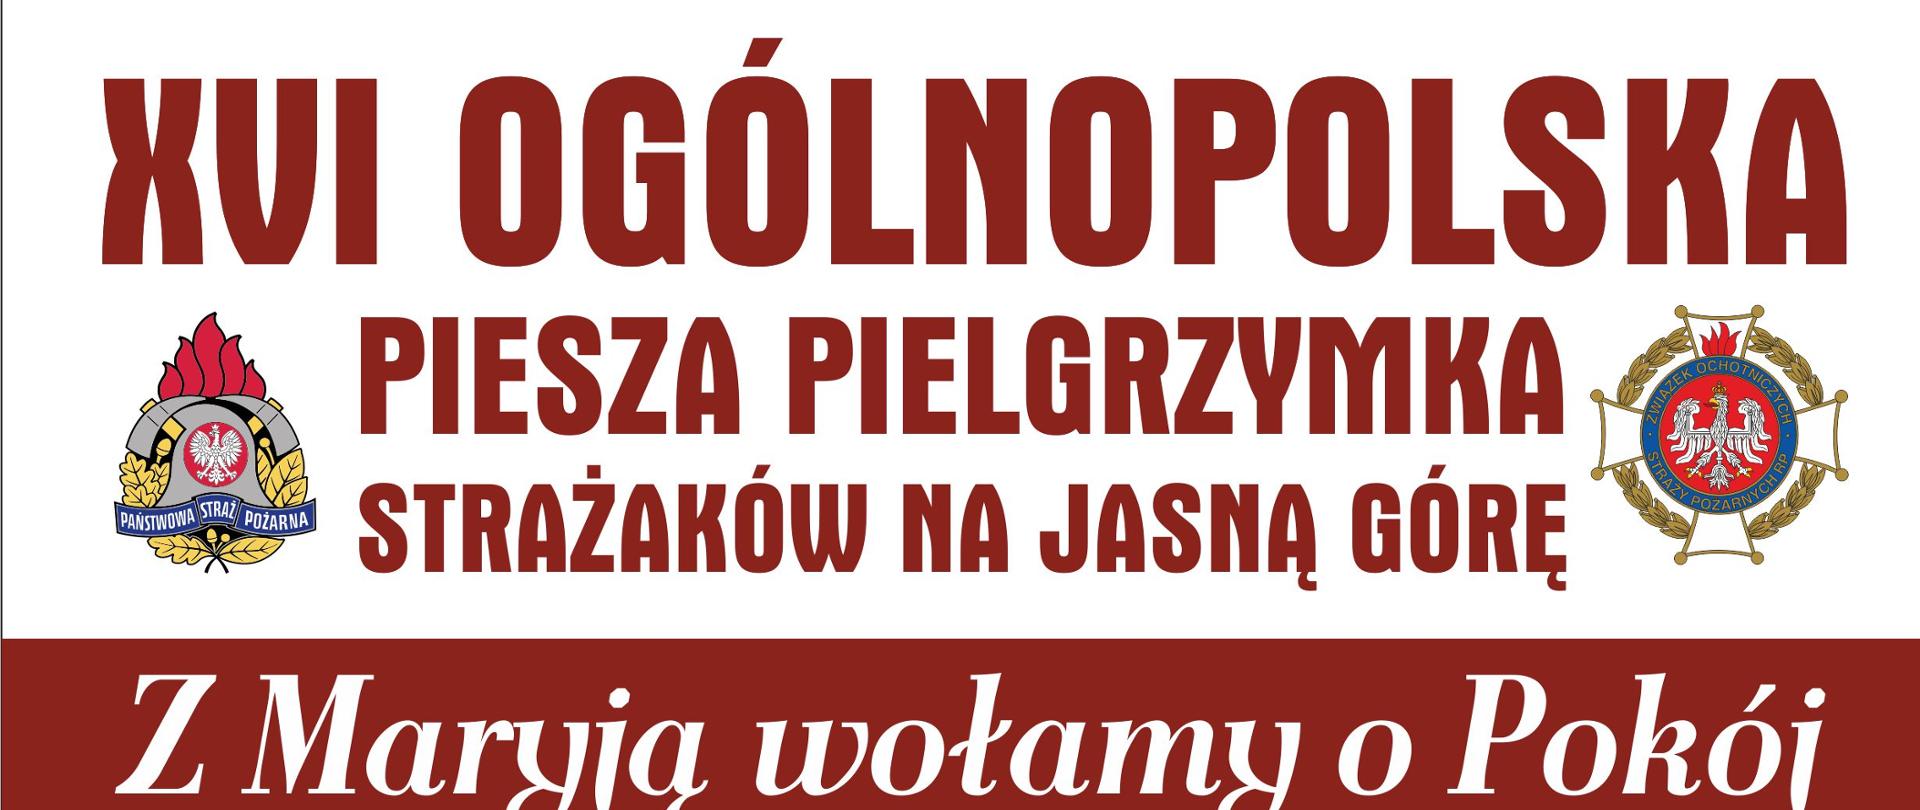 Zdjęcie przedstawia plakat XVI Ogólnopolskiej Pieszej Pielgrzymki ma Jasną Górę